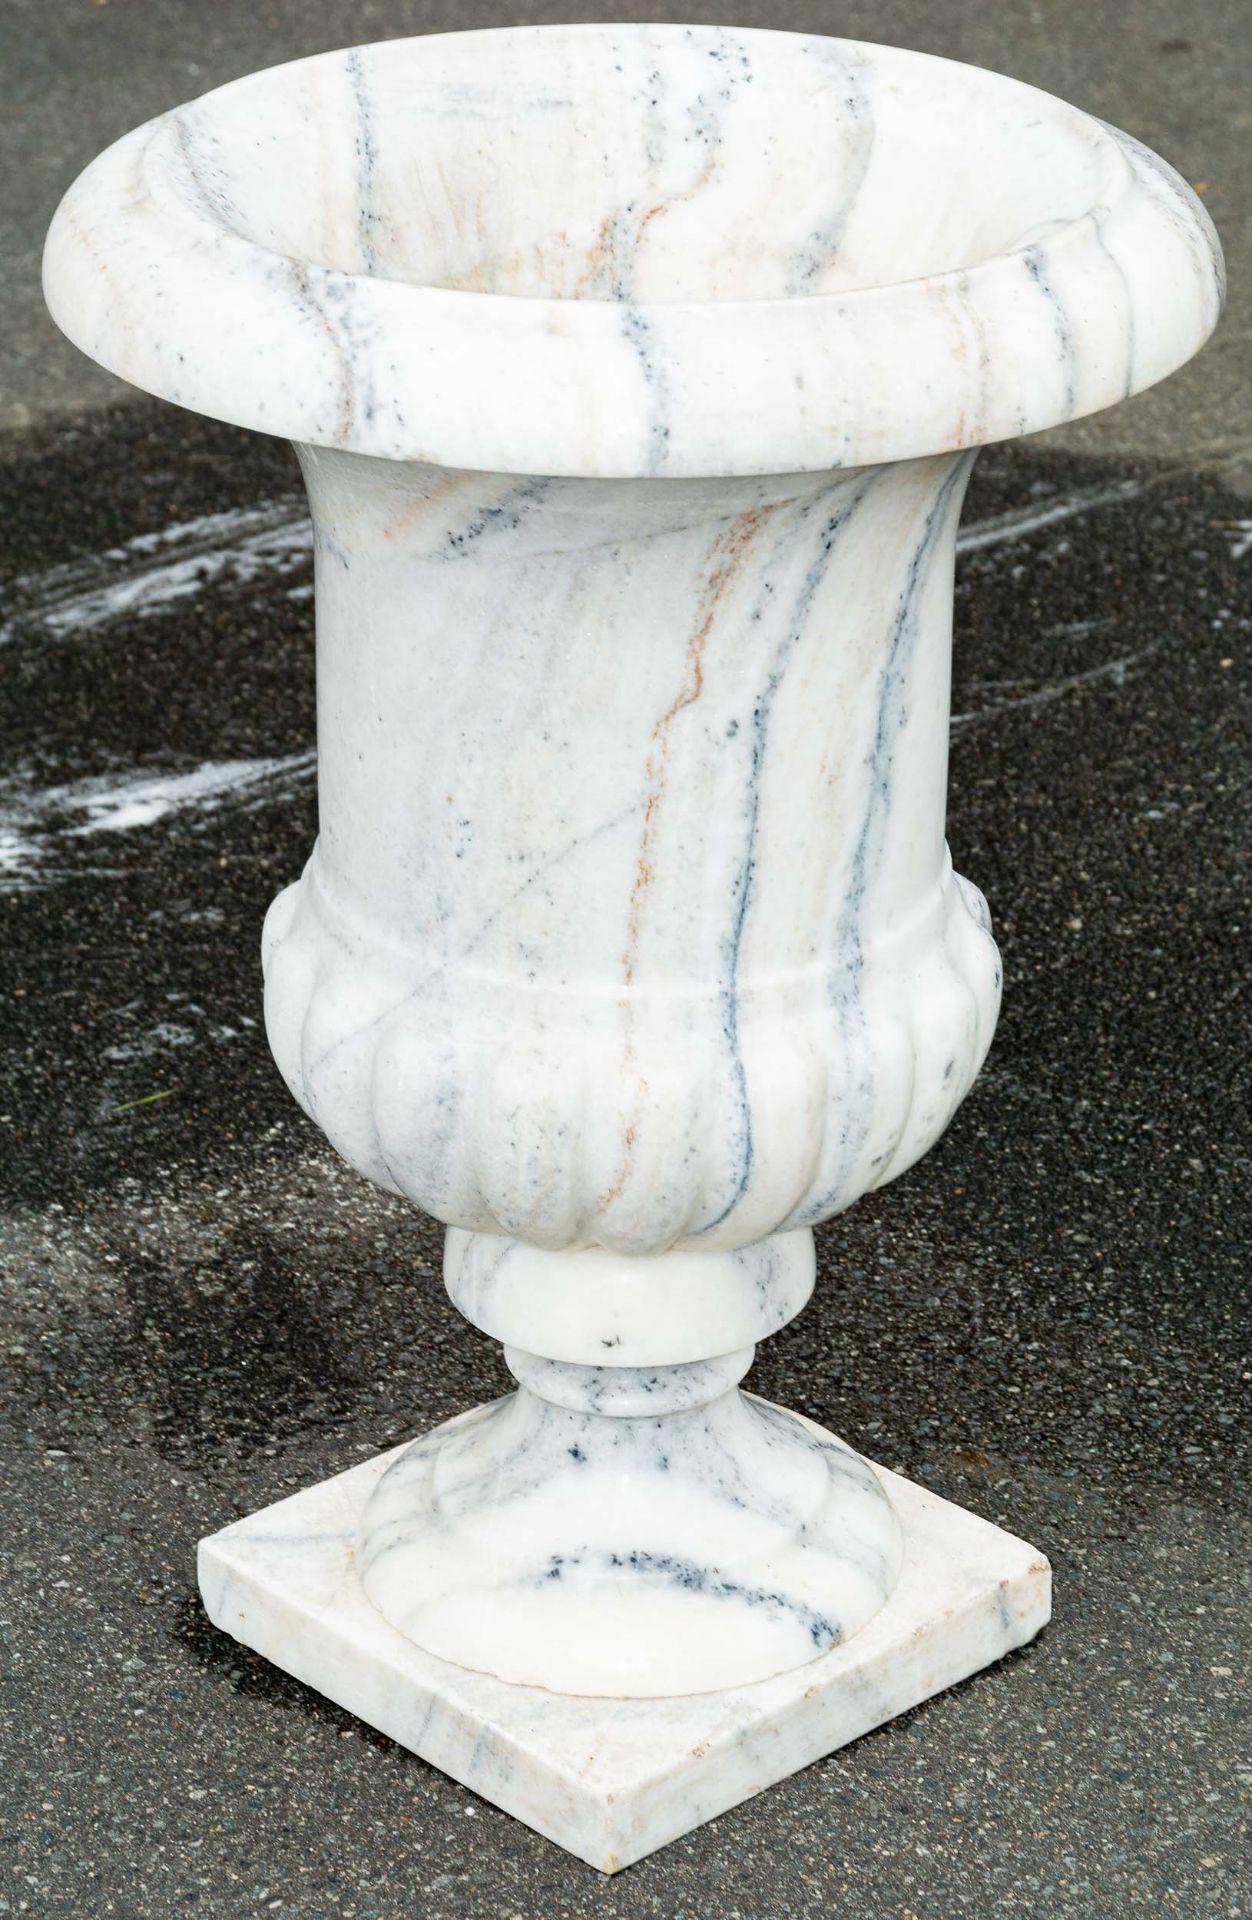 Klassische Parkvase/ Gartenvase, weiß-grauer Marmor, Höhe ca. 72 cm, Durchmesser ca. 48 cm; Bodenpl - Image 9 of 9